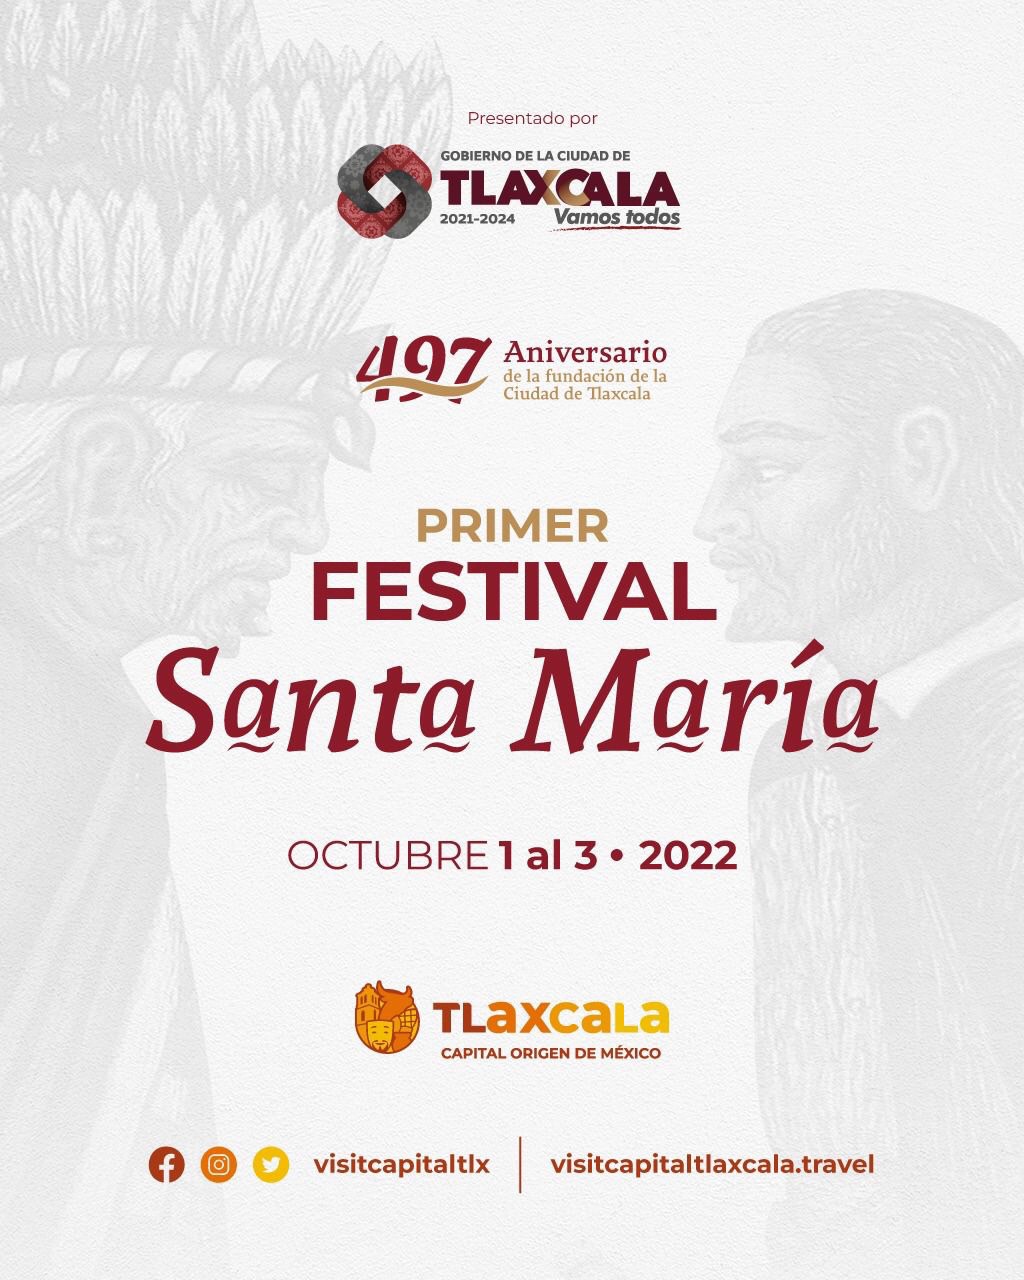 Artistas de renombre festejarán el 497 Aniversario de la Fundación de la Ciudad de Tlaxcala